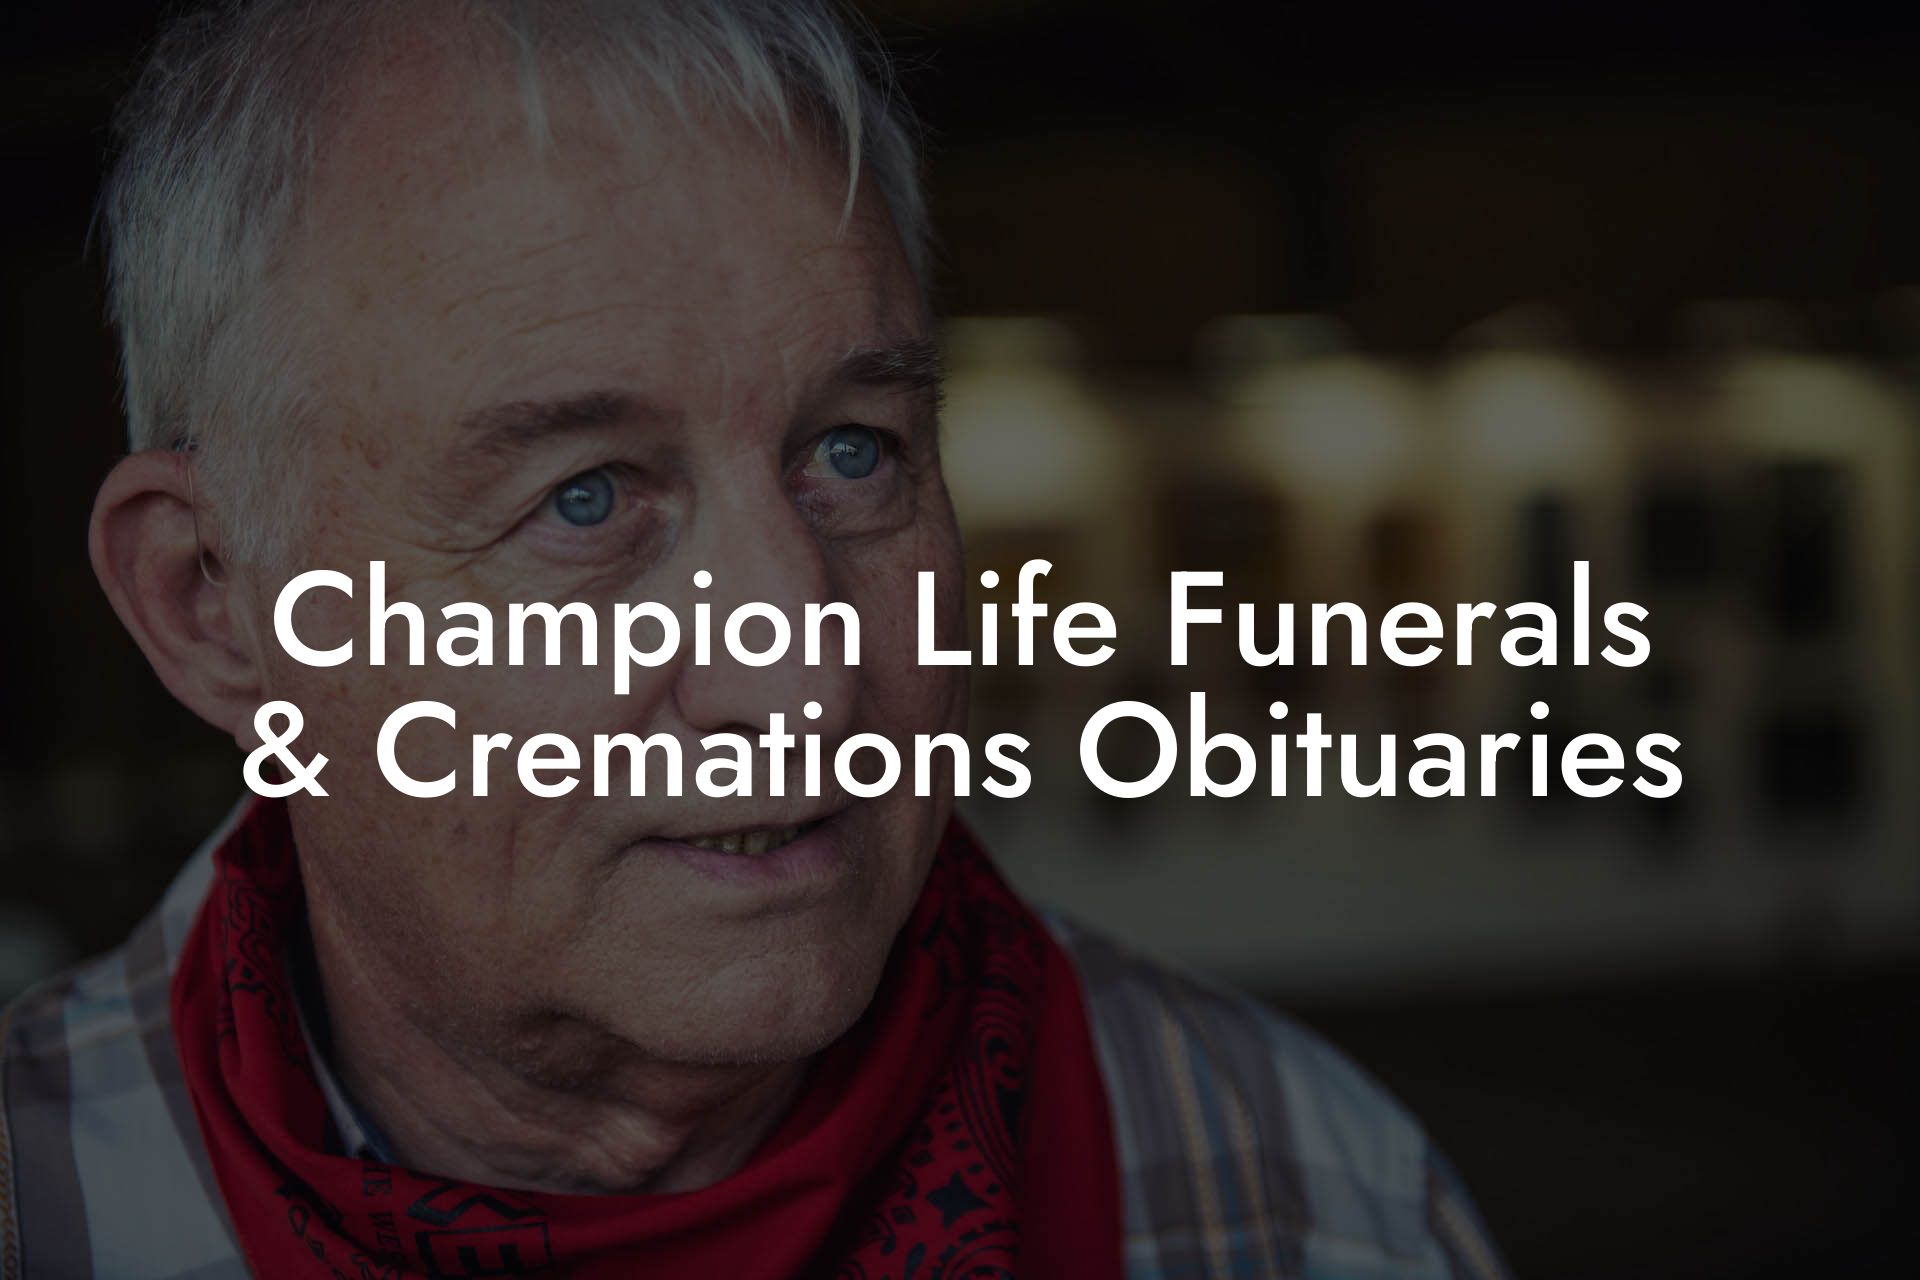 Champion Life Funerals & Cremations Obituaries